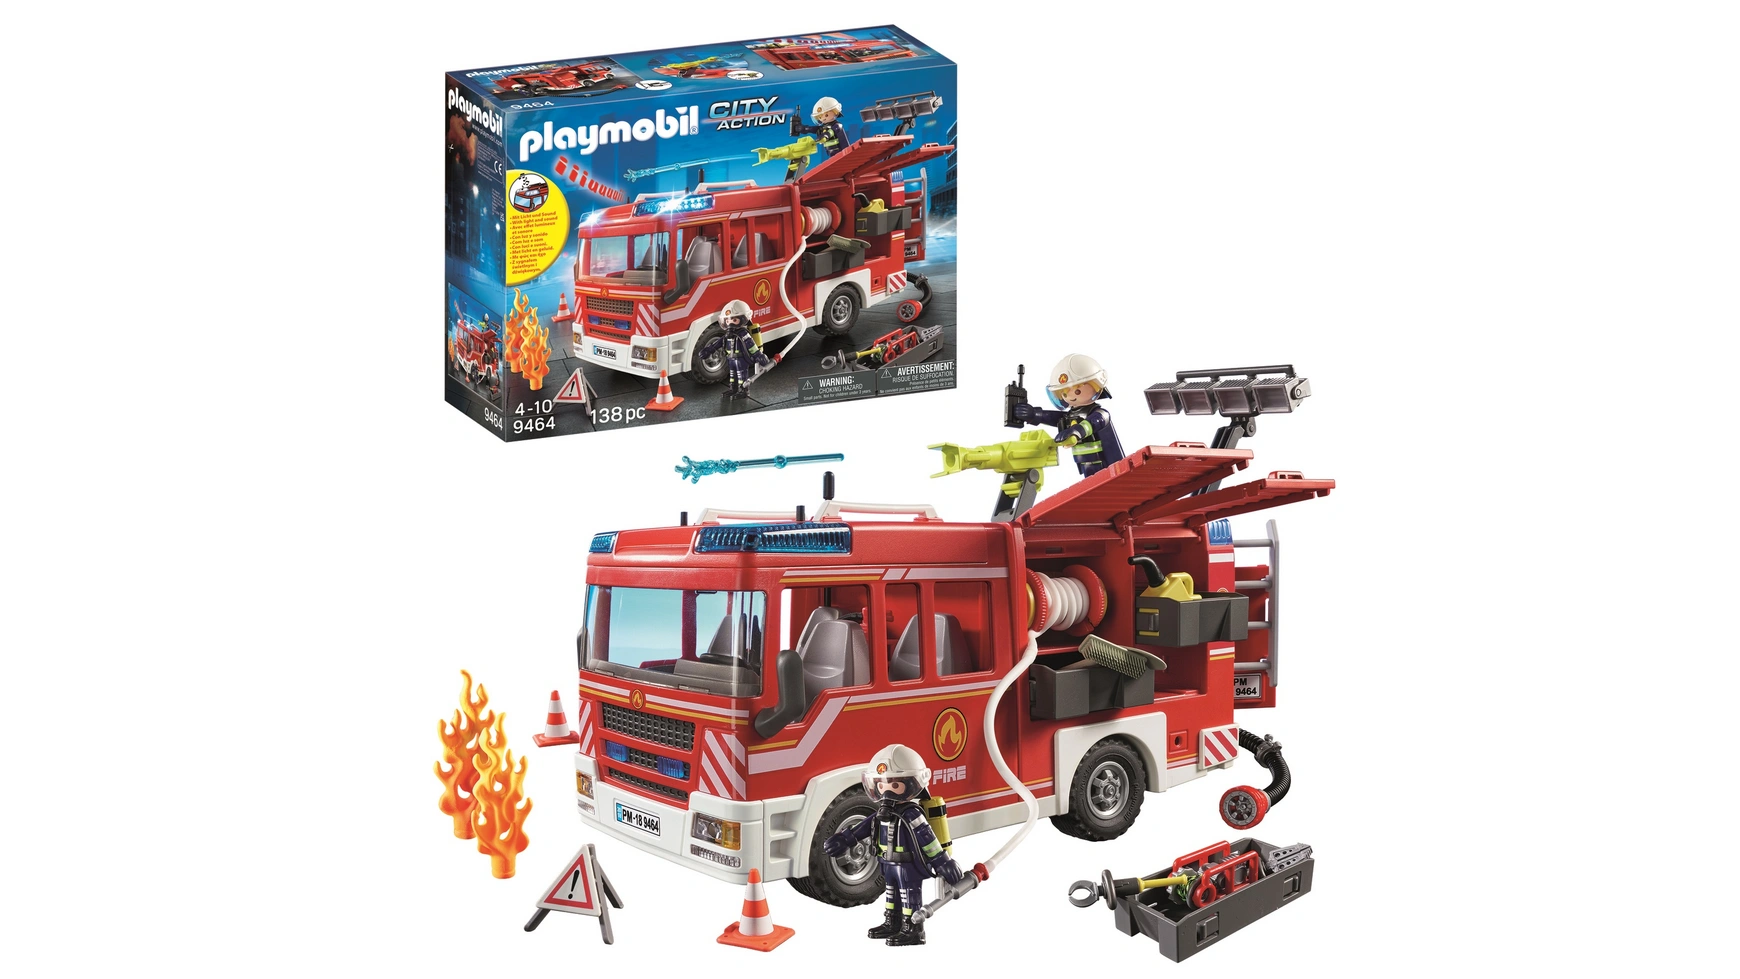 City action пожарно-спасательная машина Playmobil playmobil city action 9464 пожарная служба пожарная машина 138 дет